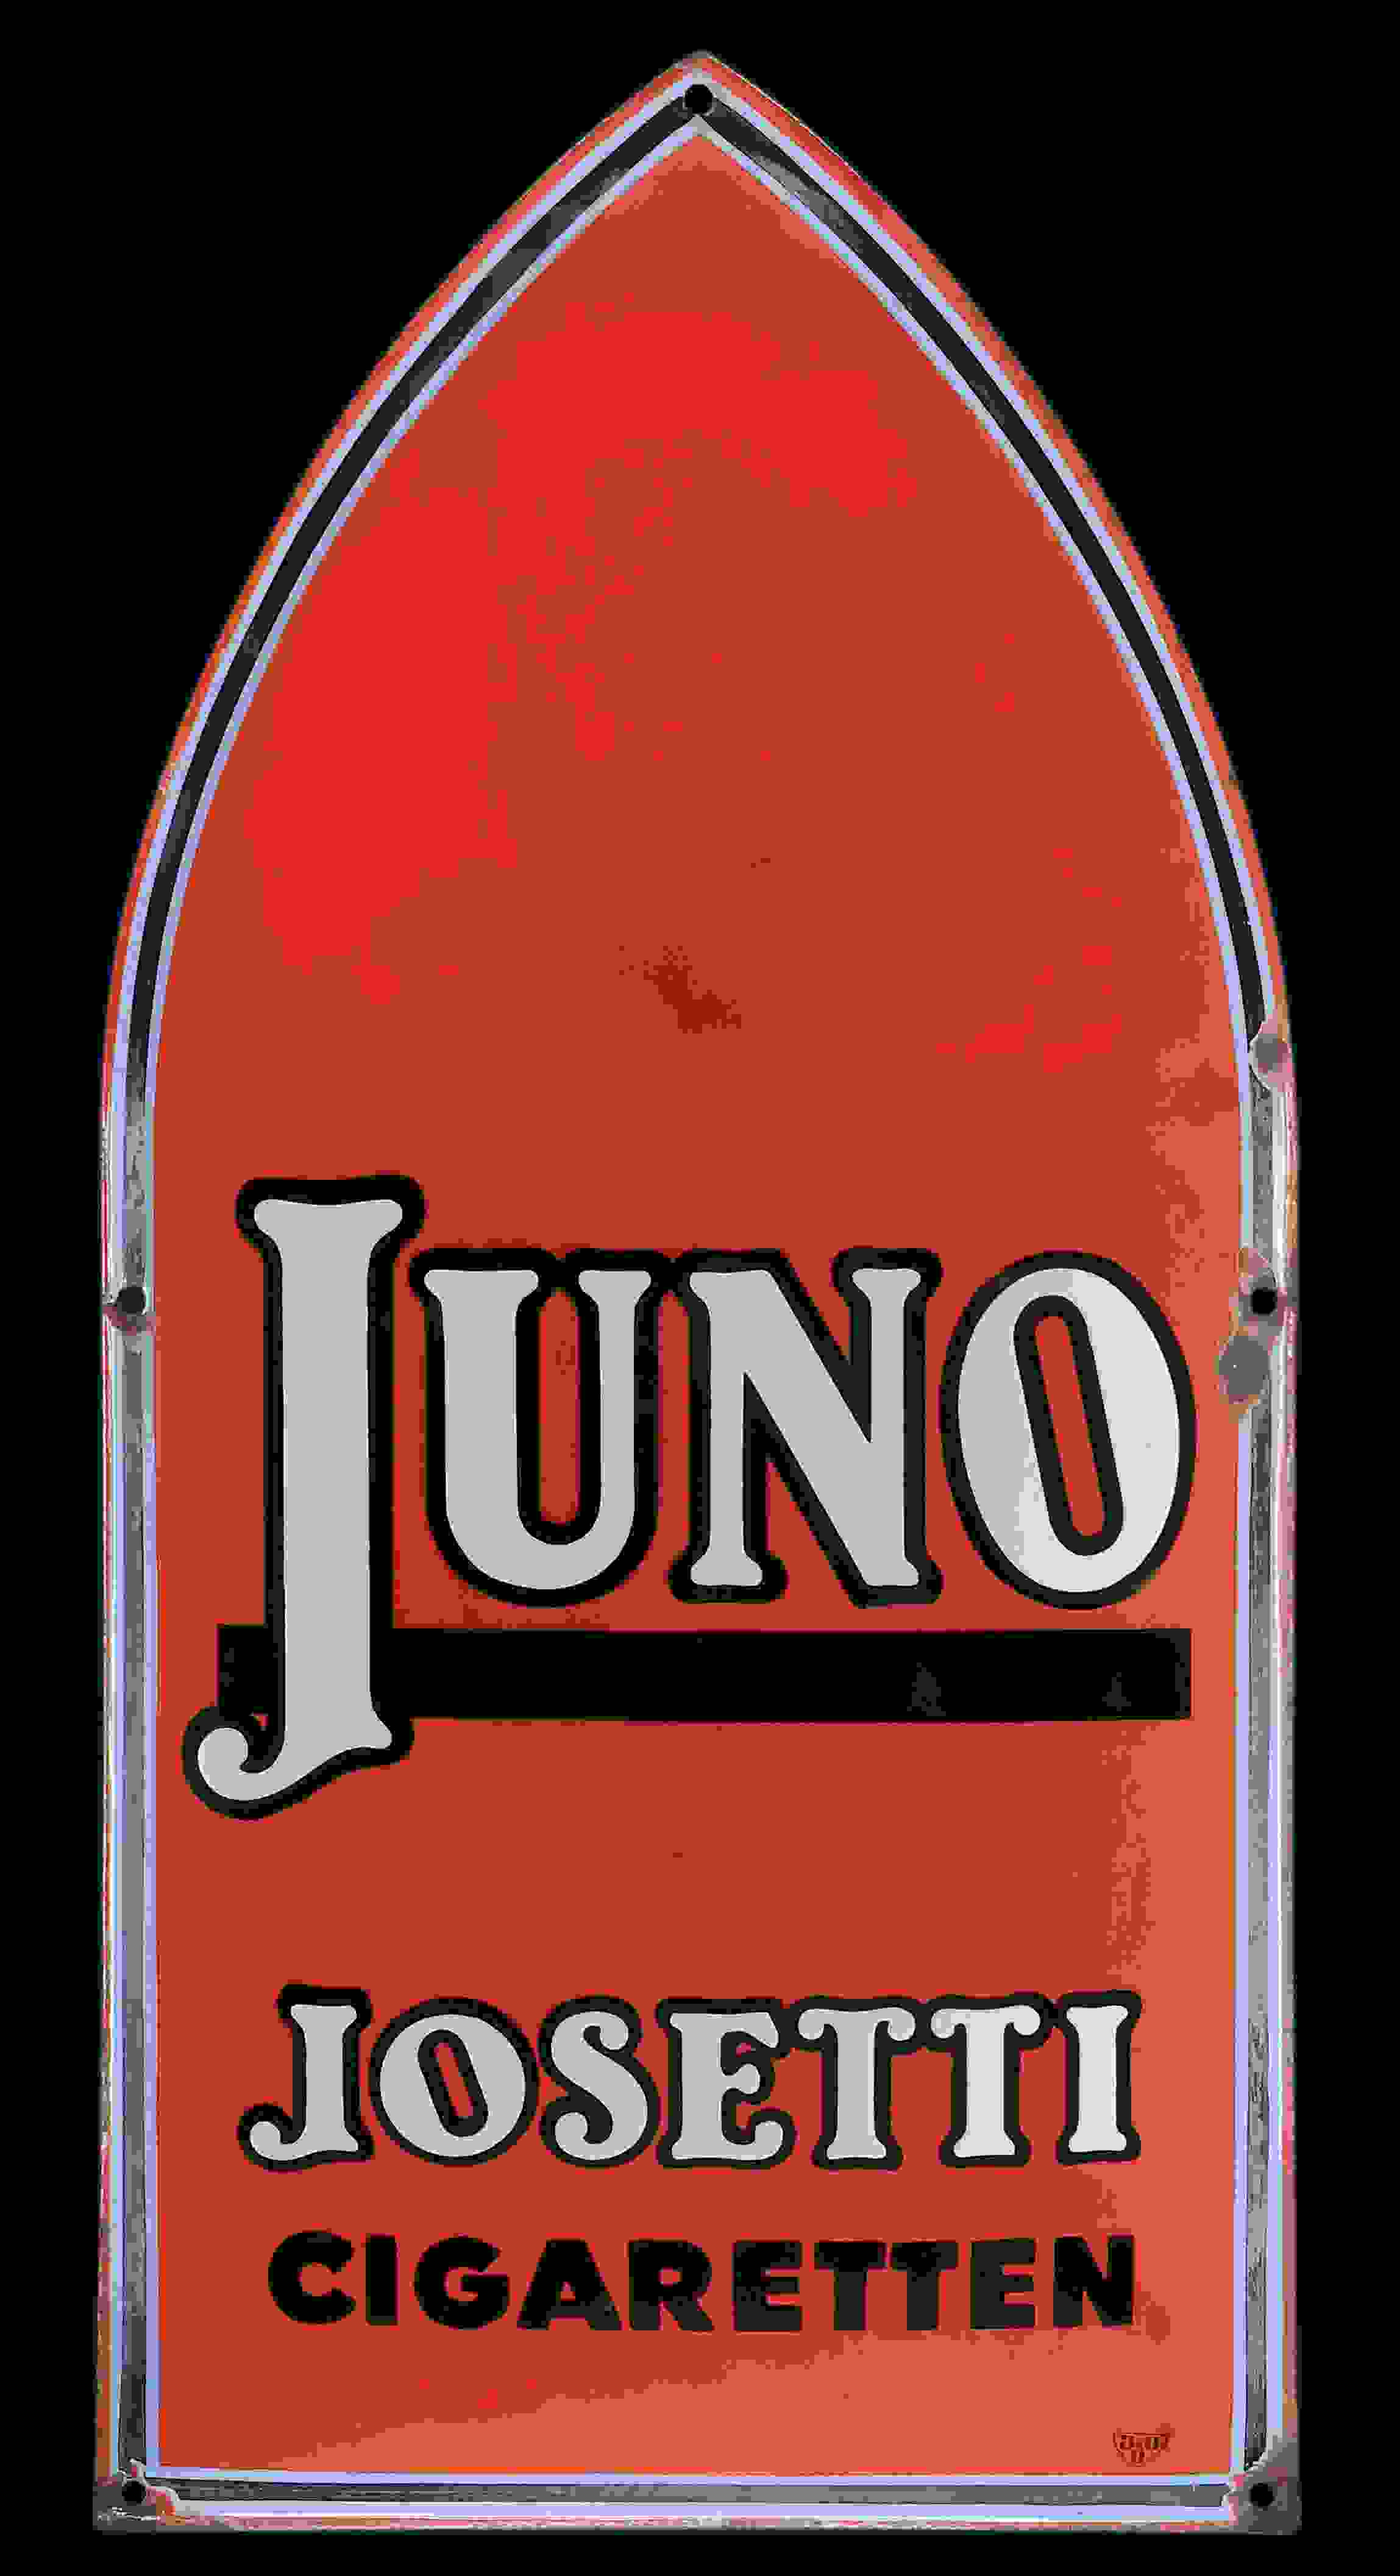 Juno Josetti Cigaretten 